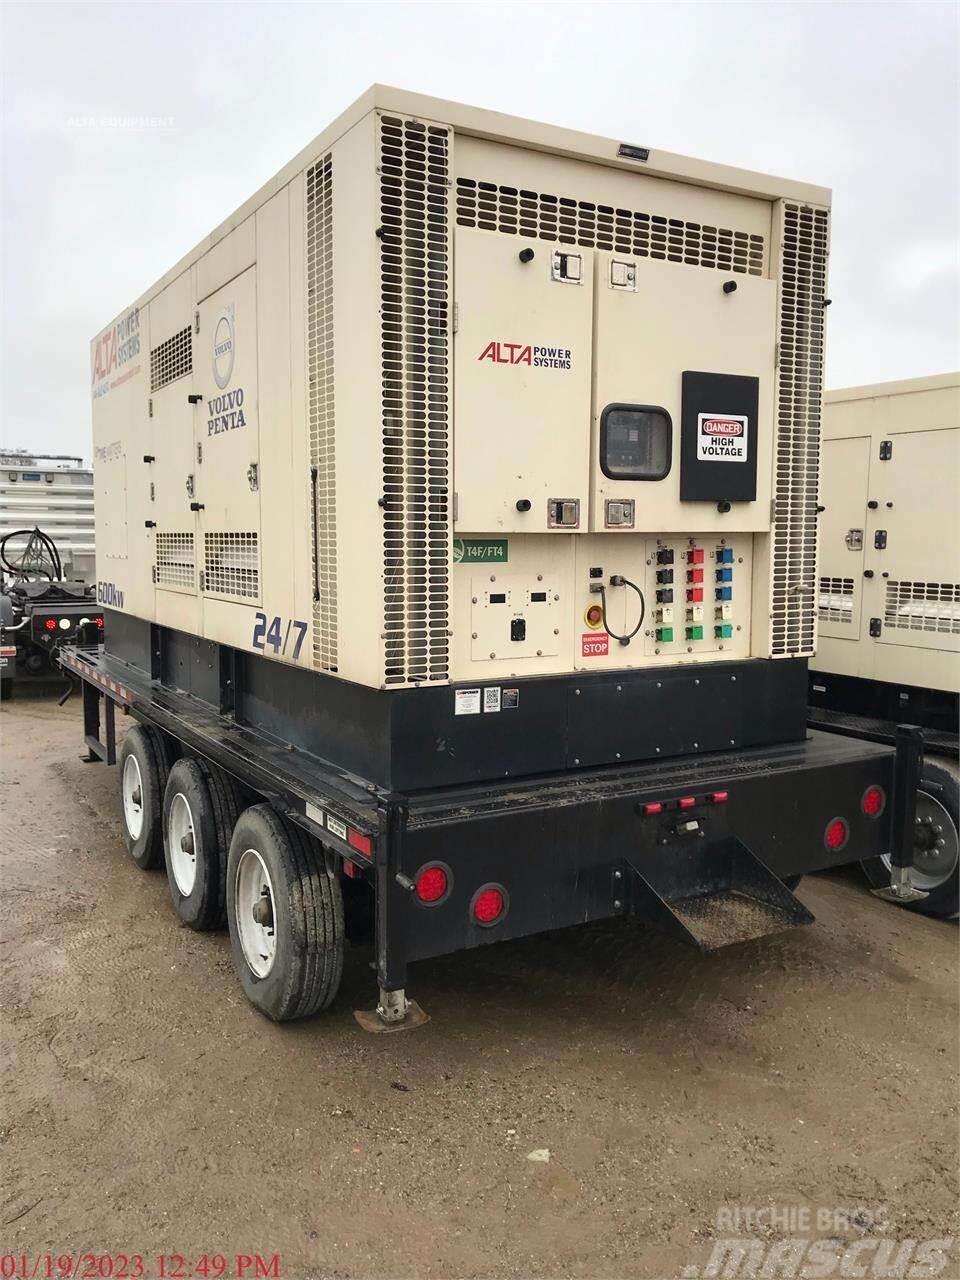  CK POWER 550 KW Kiti generatoriai